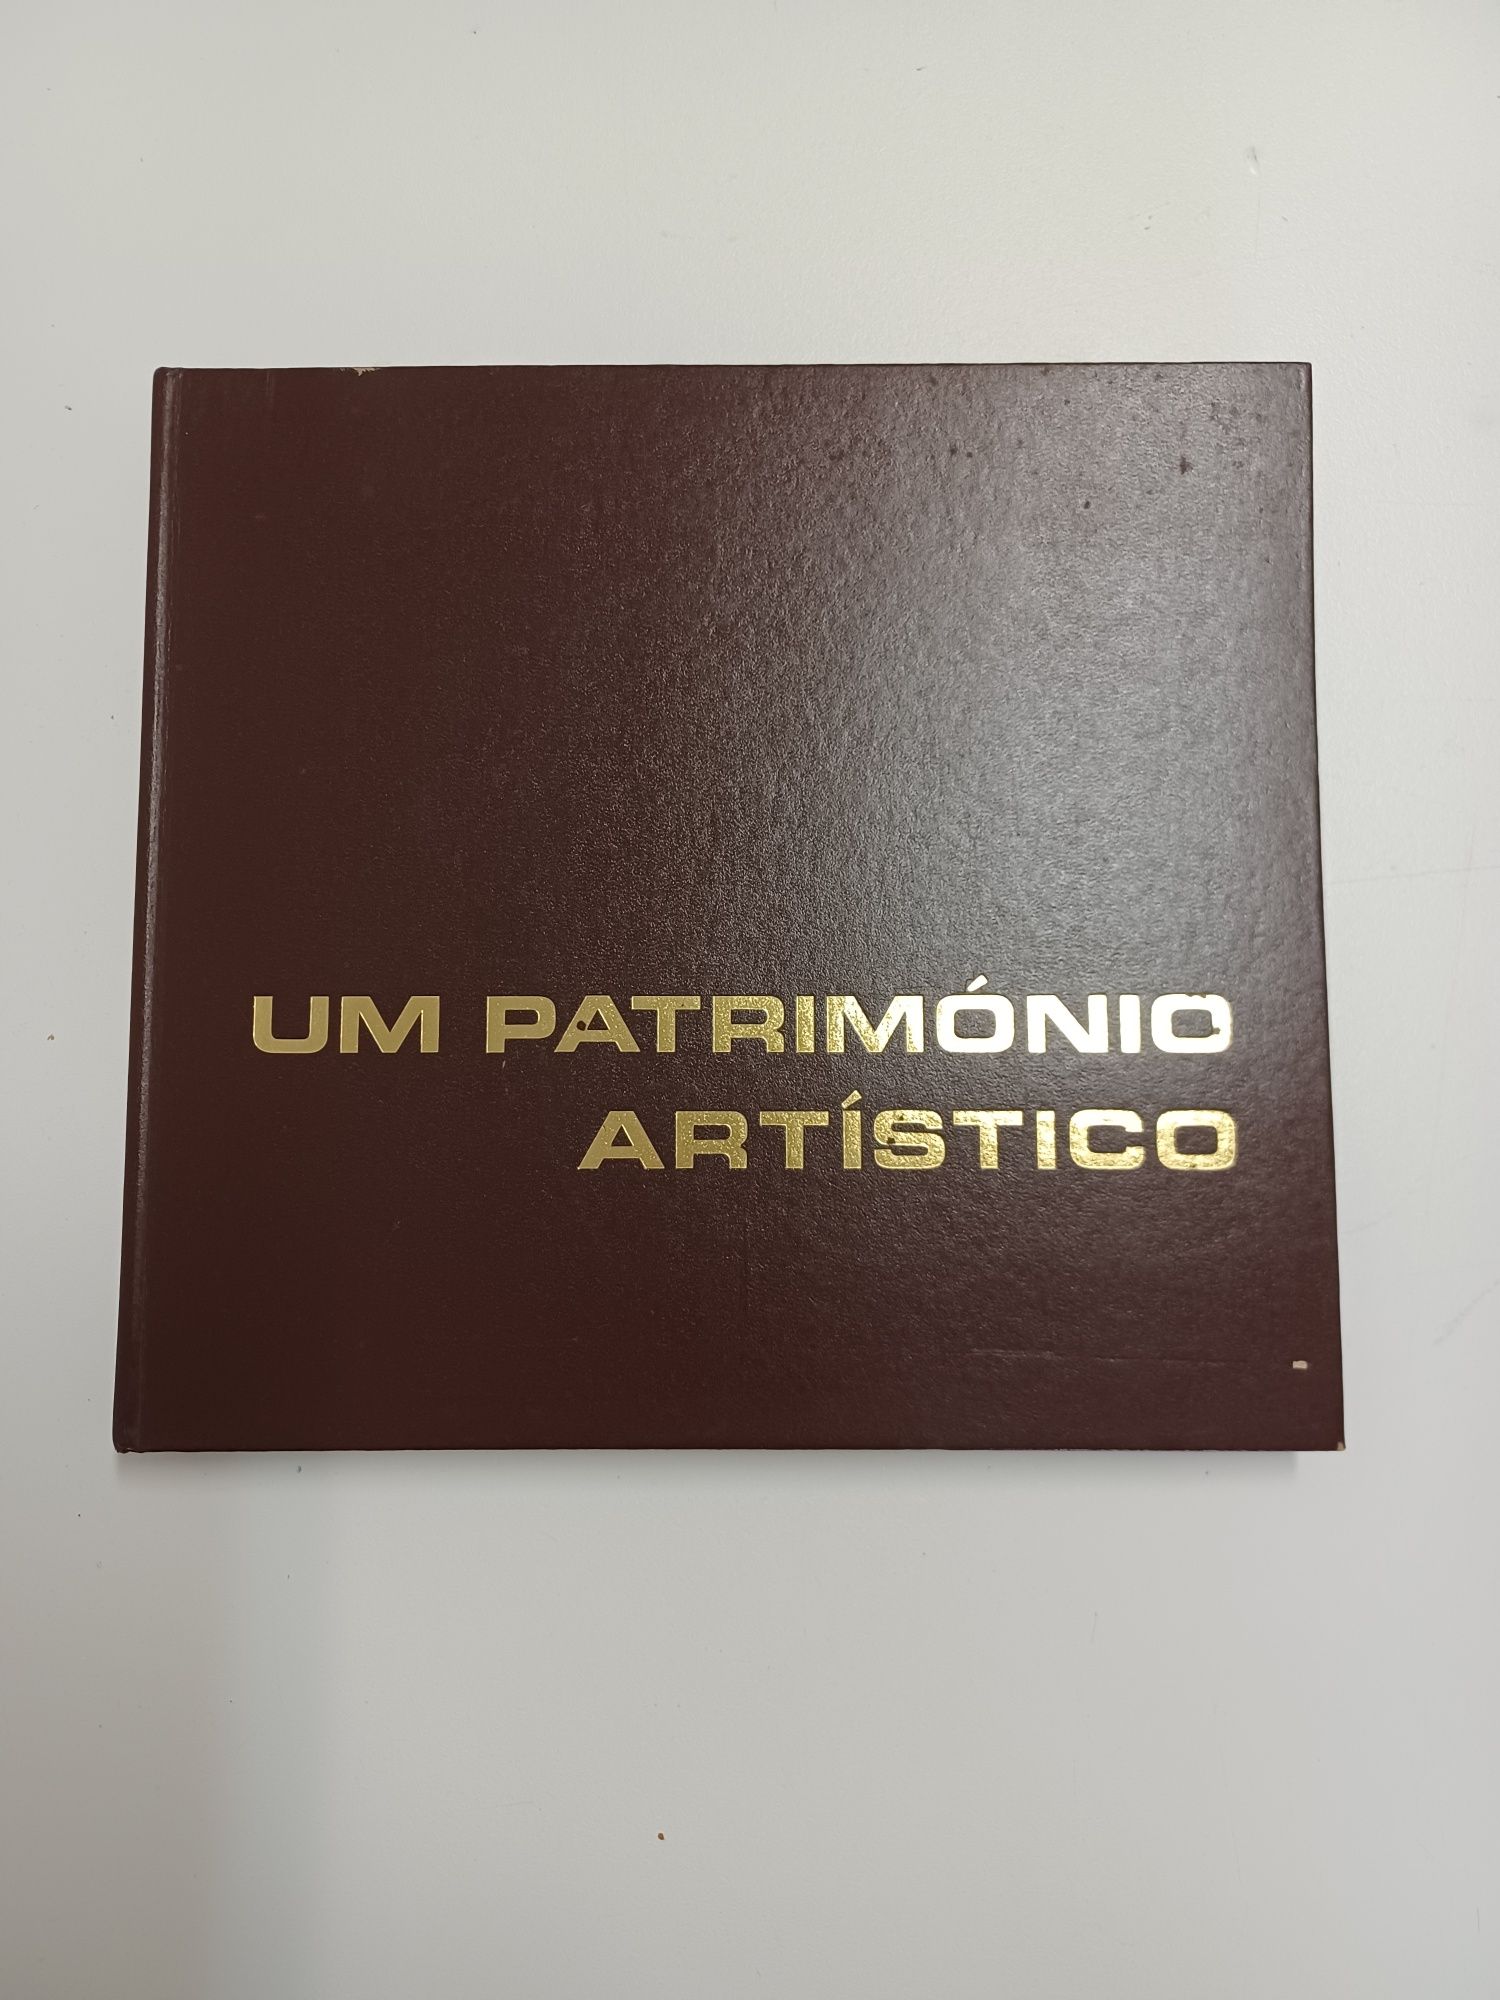 Um Património Artístico - Banco Português do Atlântico